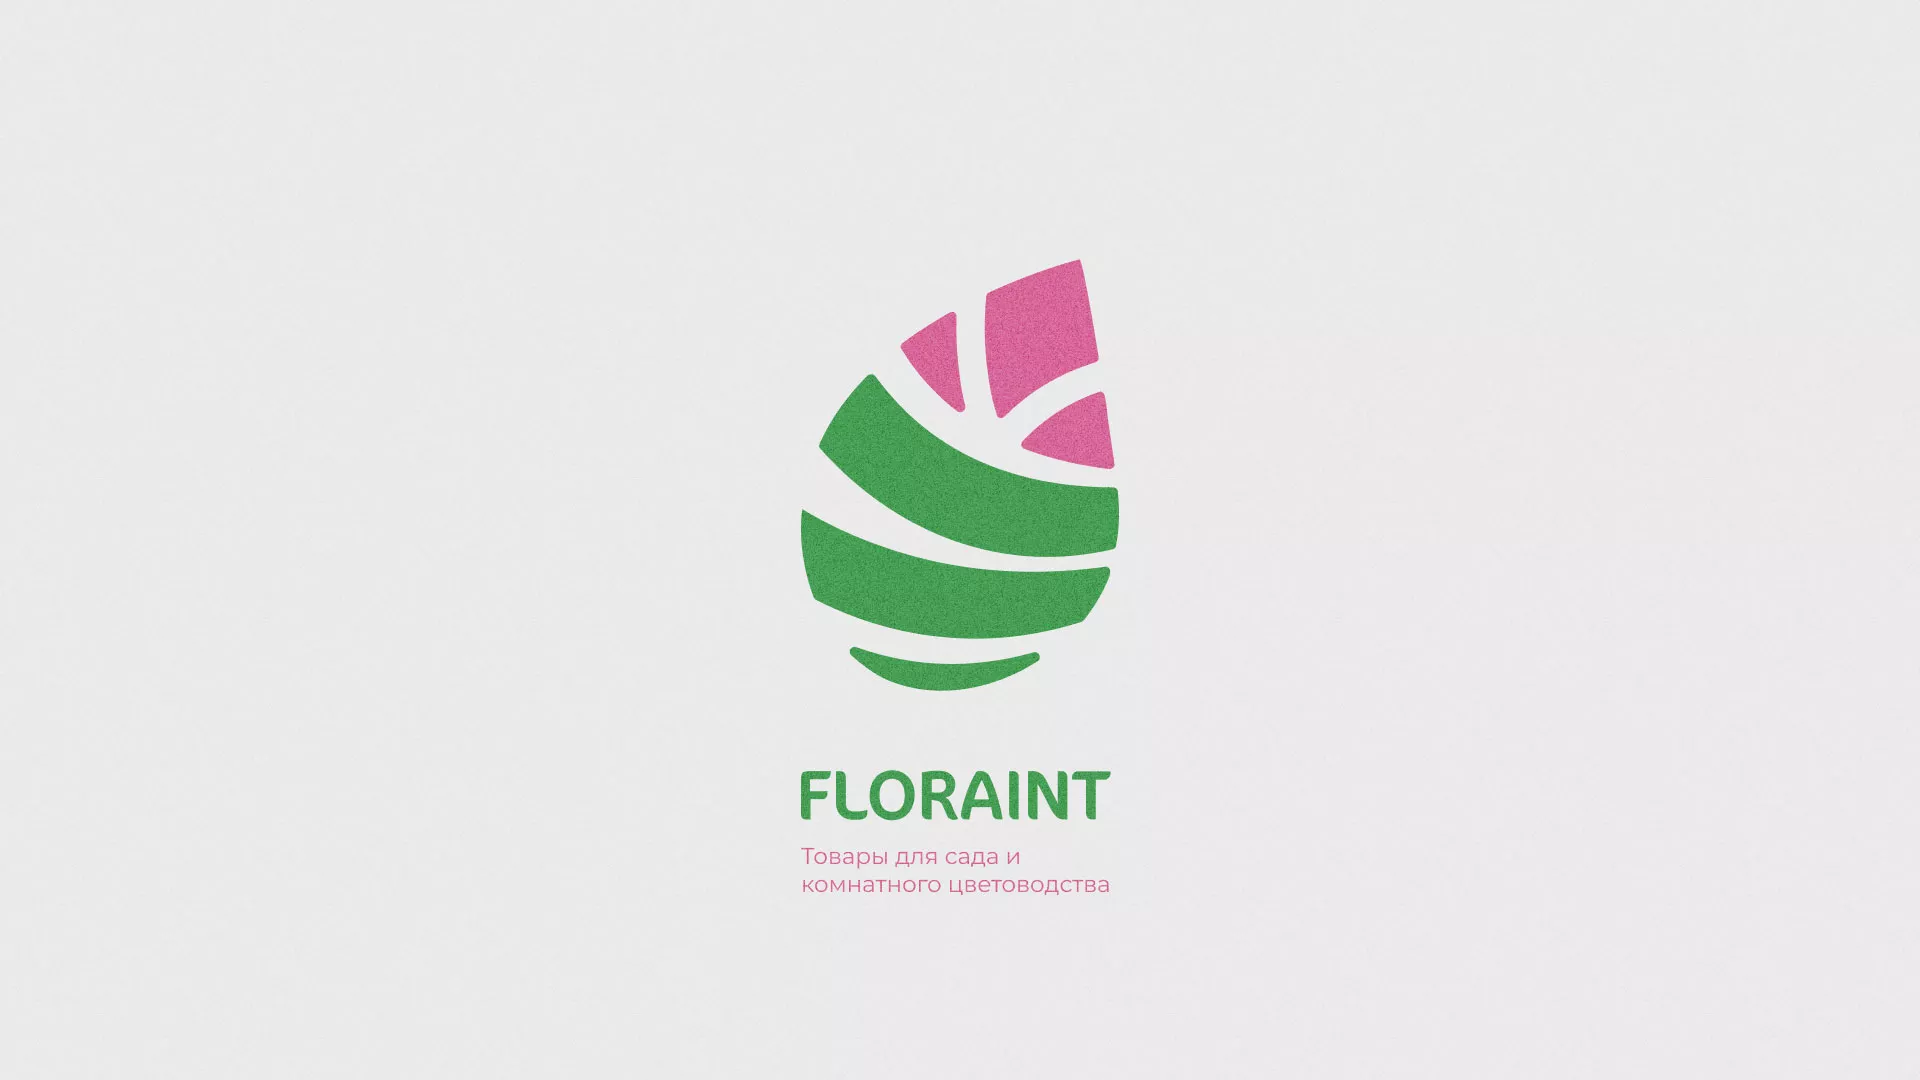 Разработка оформления профиля Instagram для магазина «Floraint» в Злынке